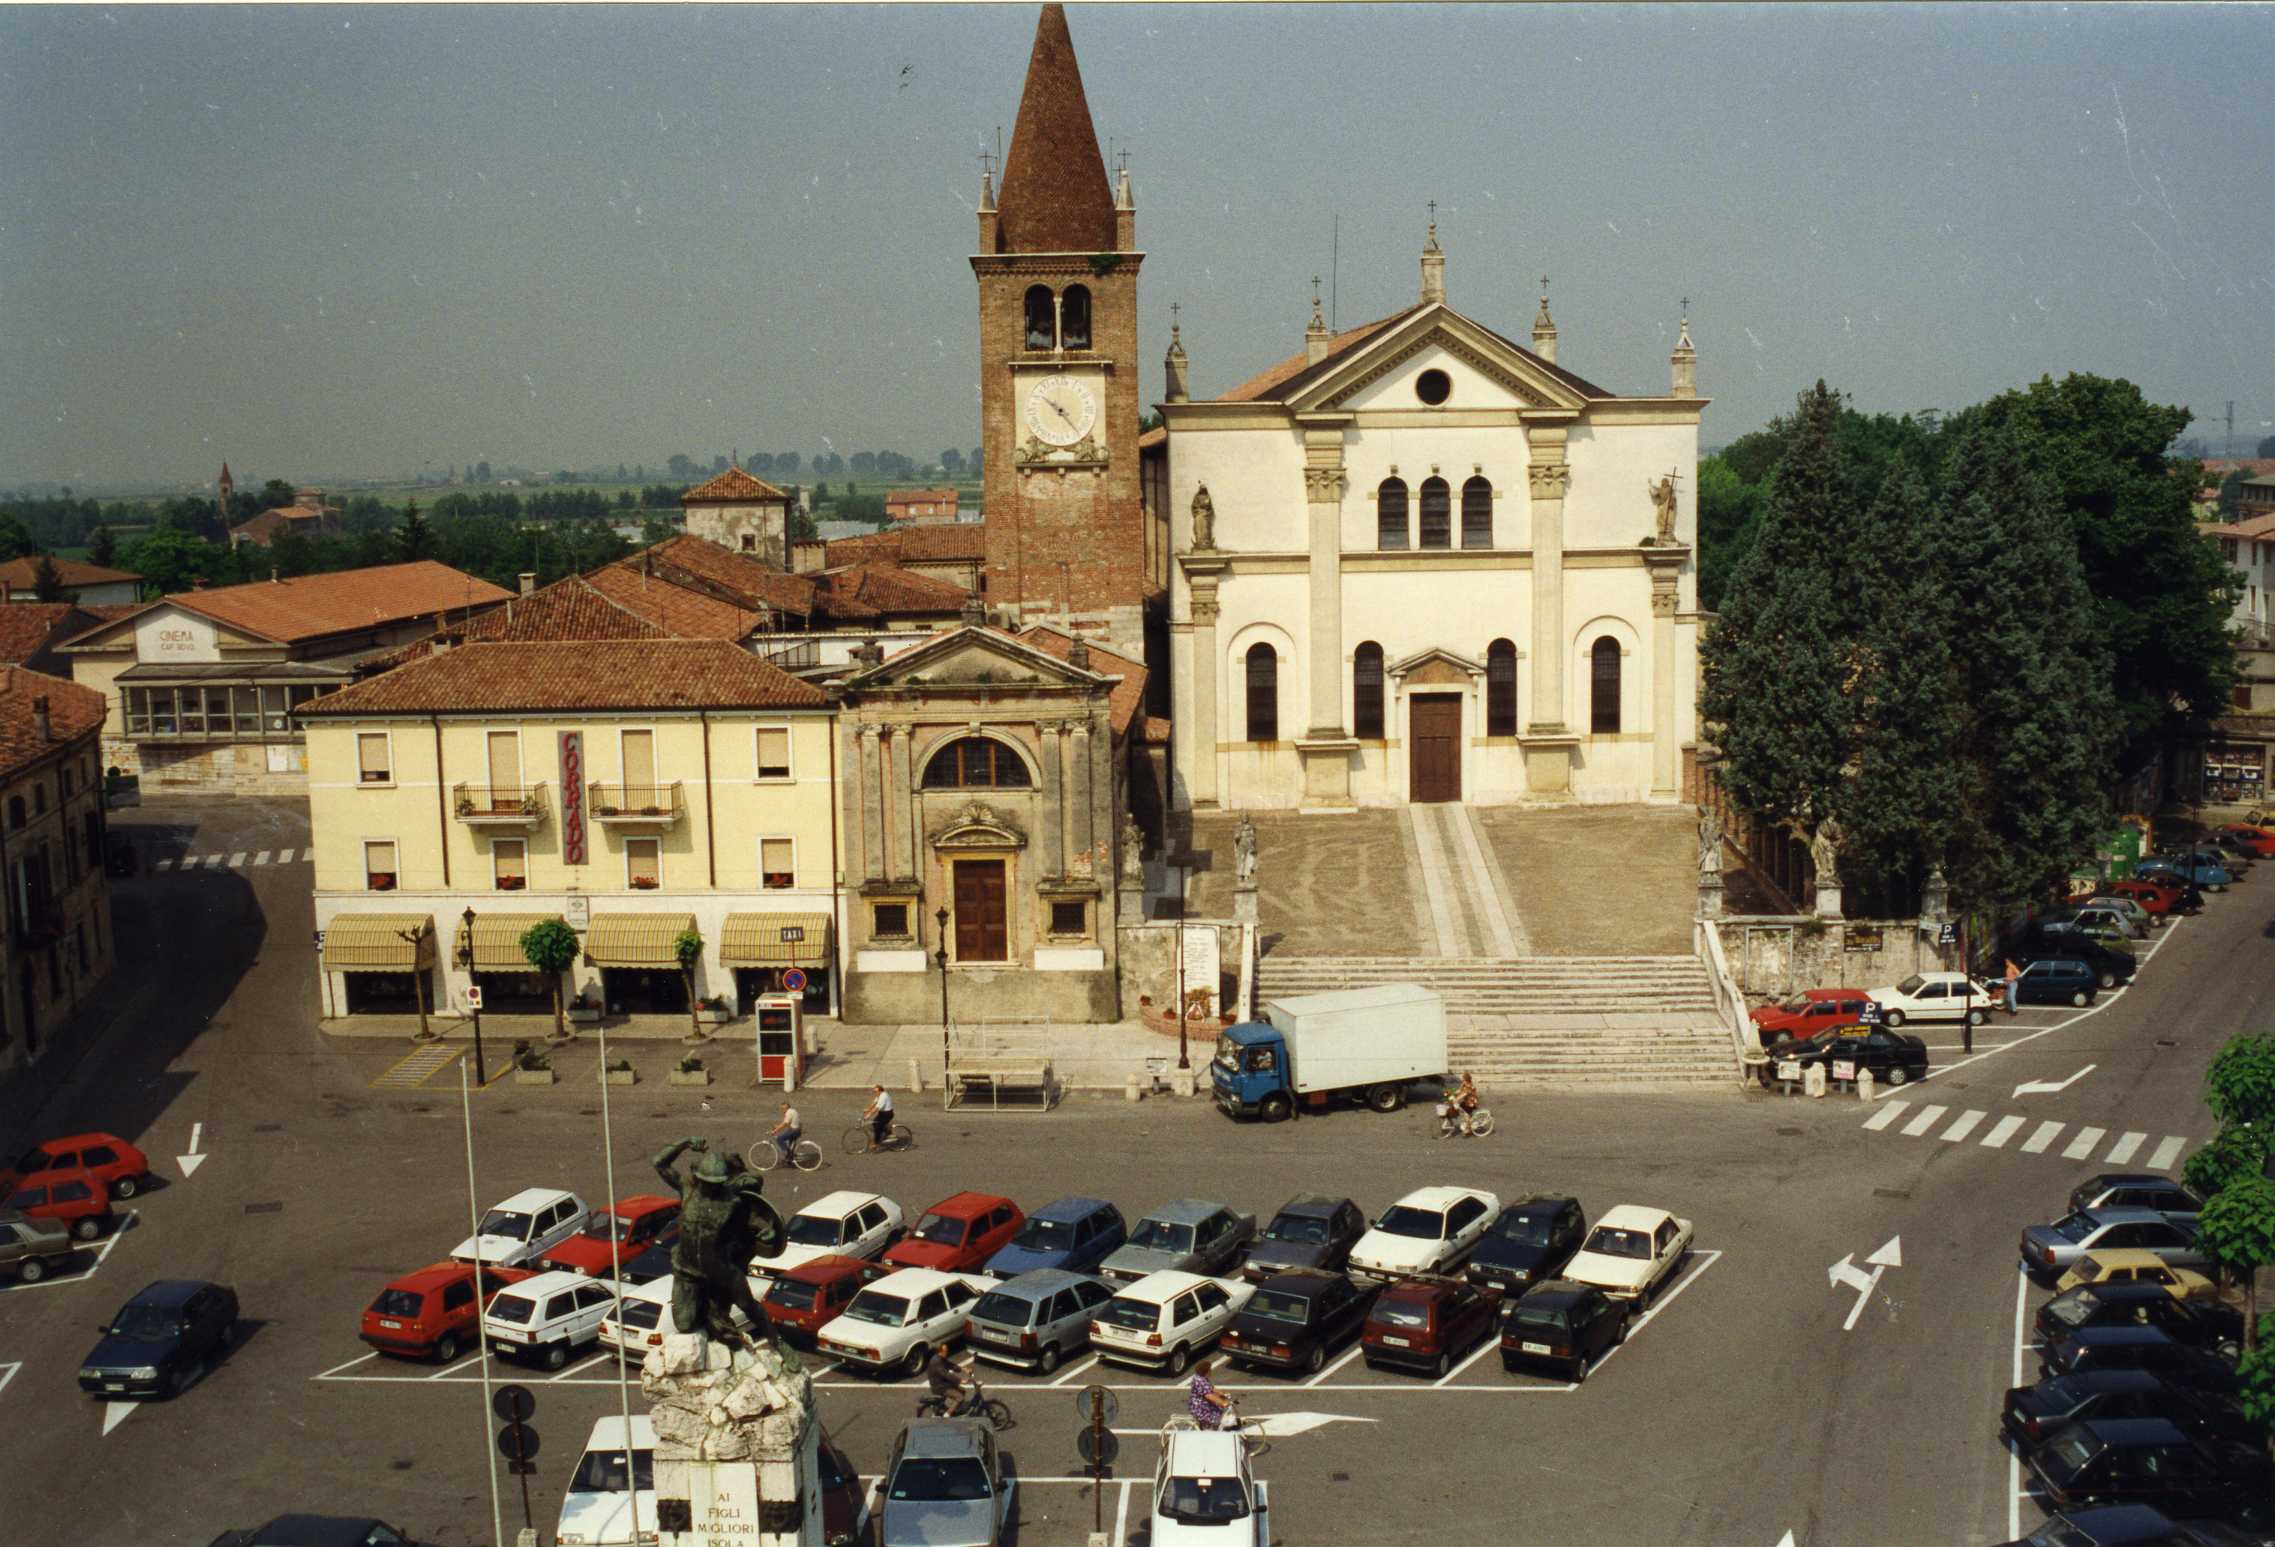 Chiesa di S. Stefano (chiesa, parrocchiale) - Isola della Scala (VR) 